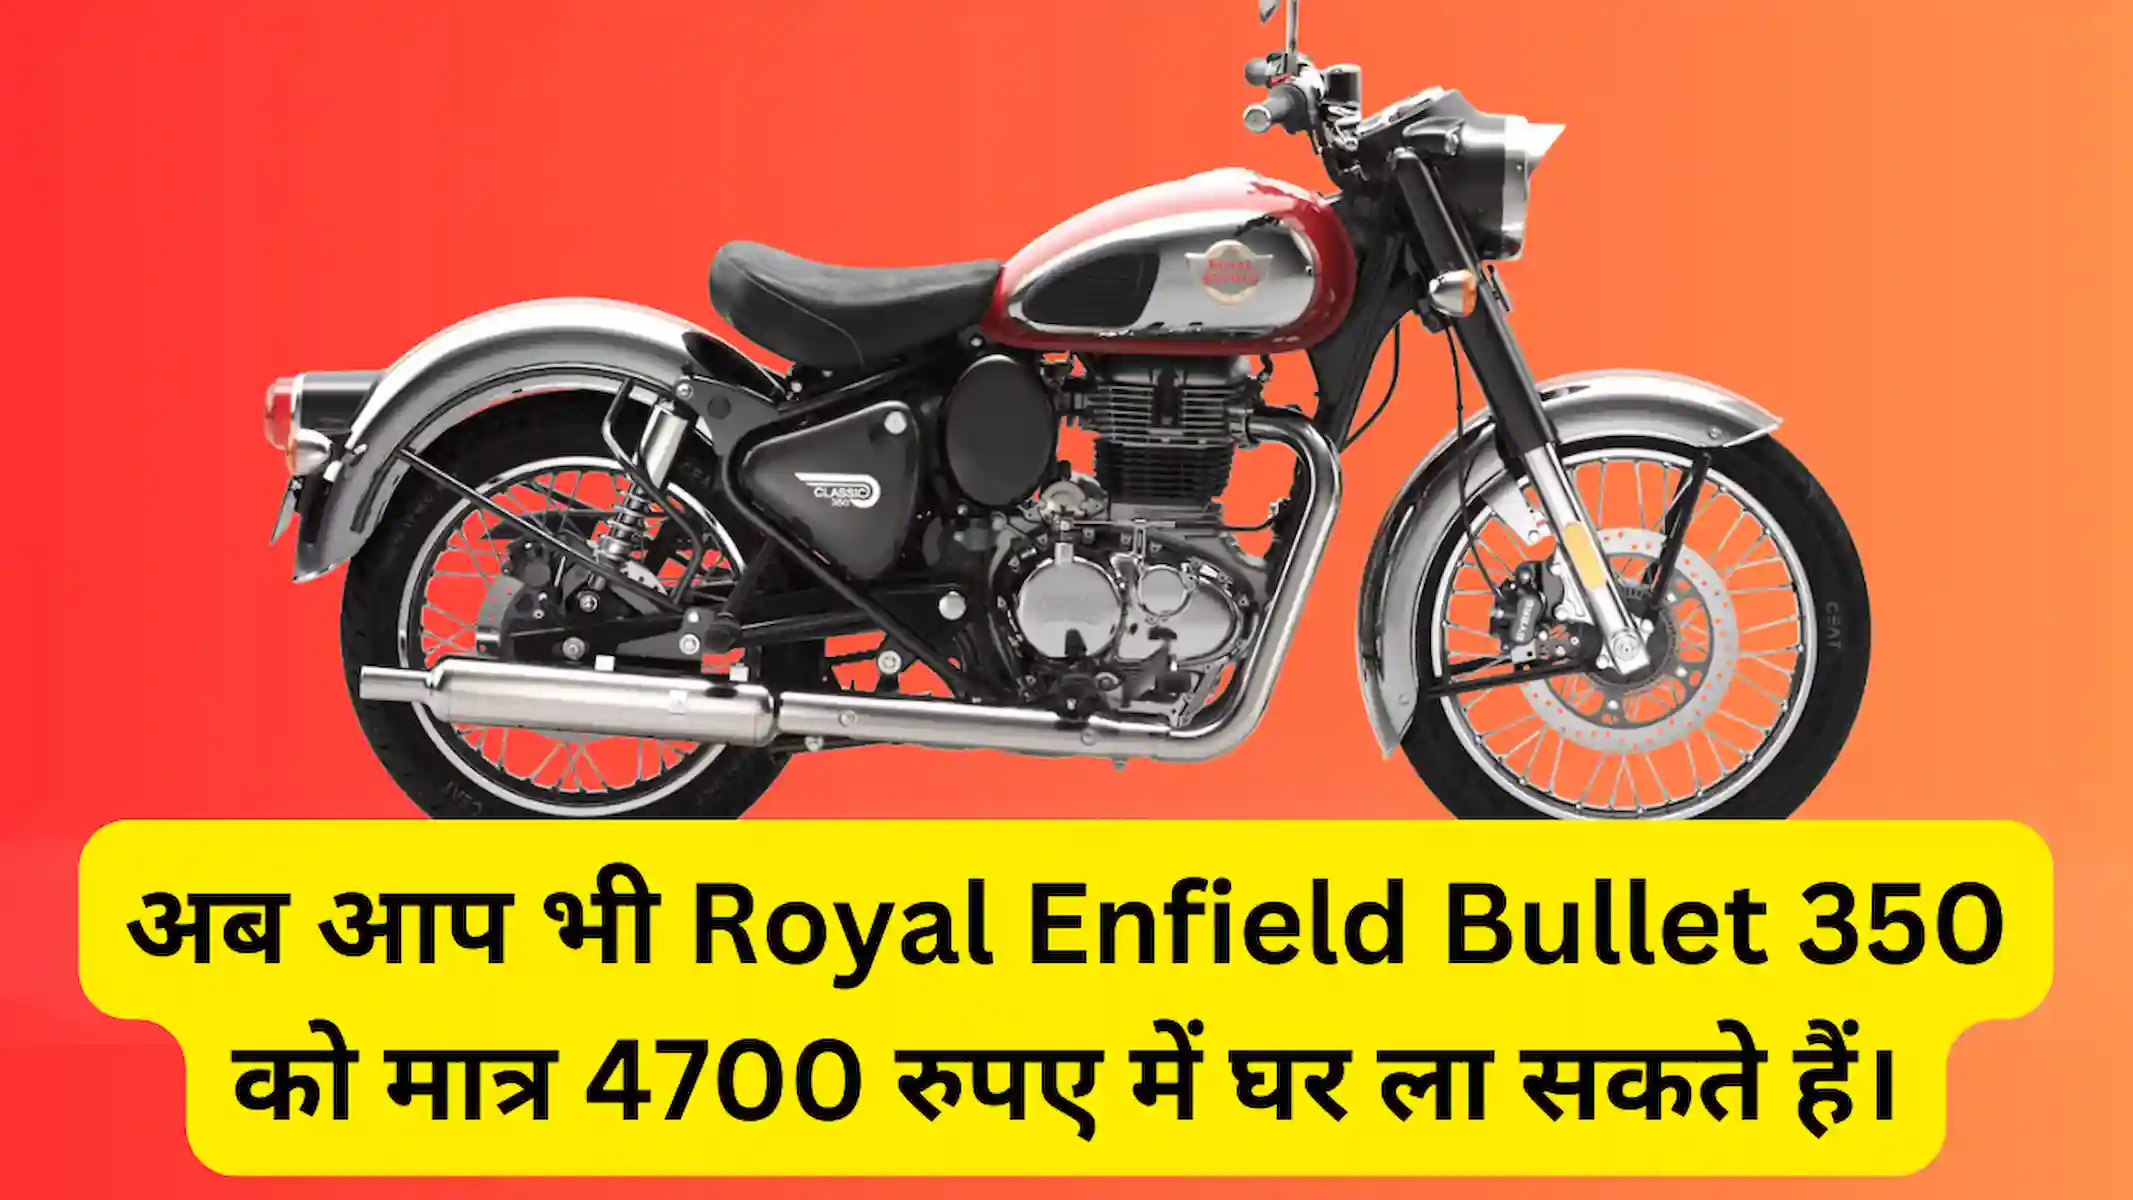 अब आप भी Royal Enfield Bullet 350 को मात्र 4700 रुपए में घर ला सकते हैं। जानिए कैसे?